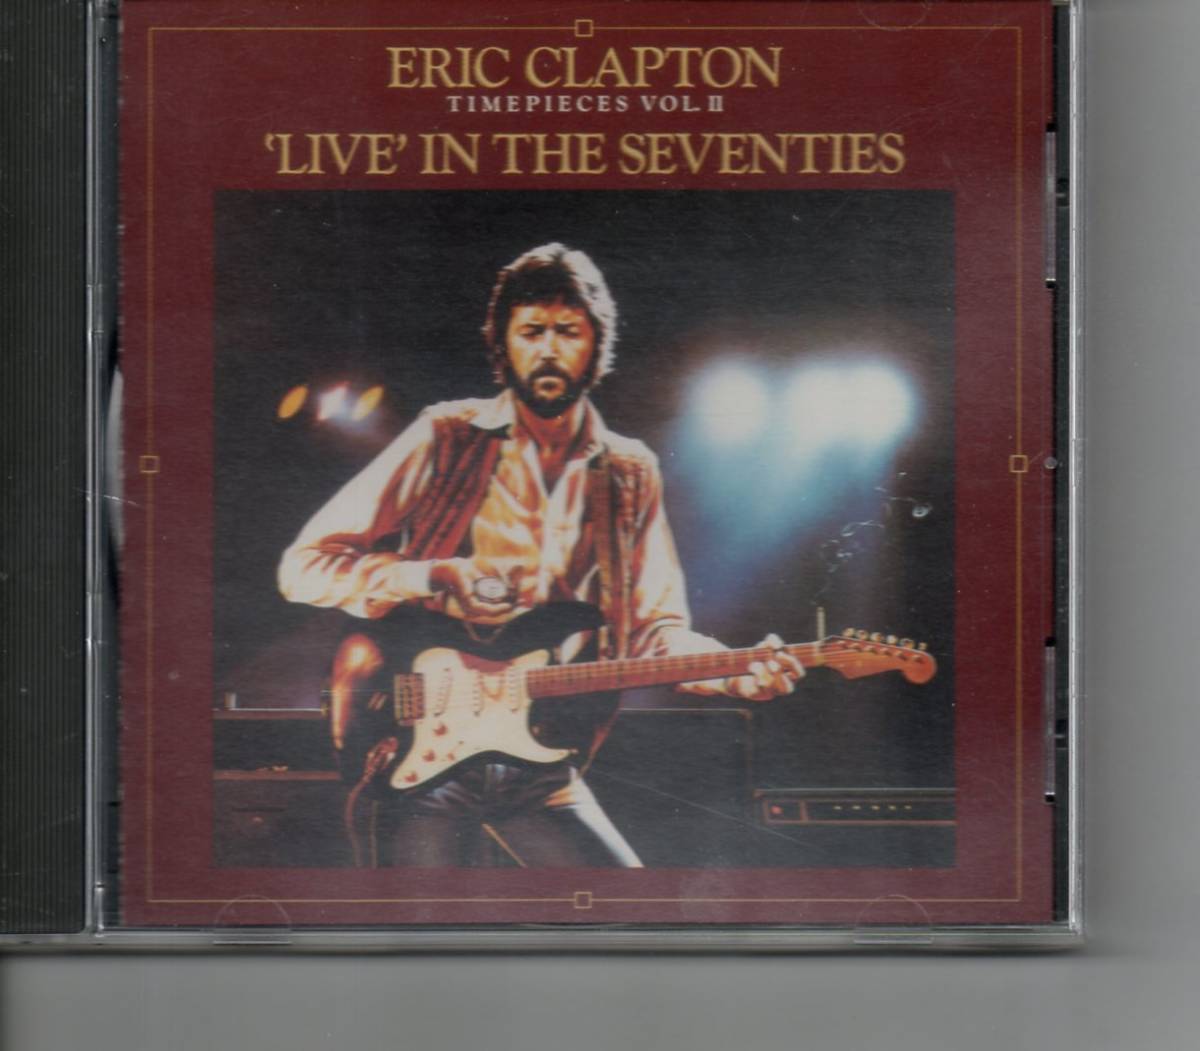 【送料無料】エリック・クラプトン/Eric Clapton - Timepieces Vol. II - 'Live' In The Seventies 【超音波洗浄/UV光照射/消磁/etc.】_Printed in USA